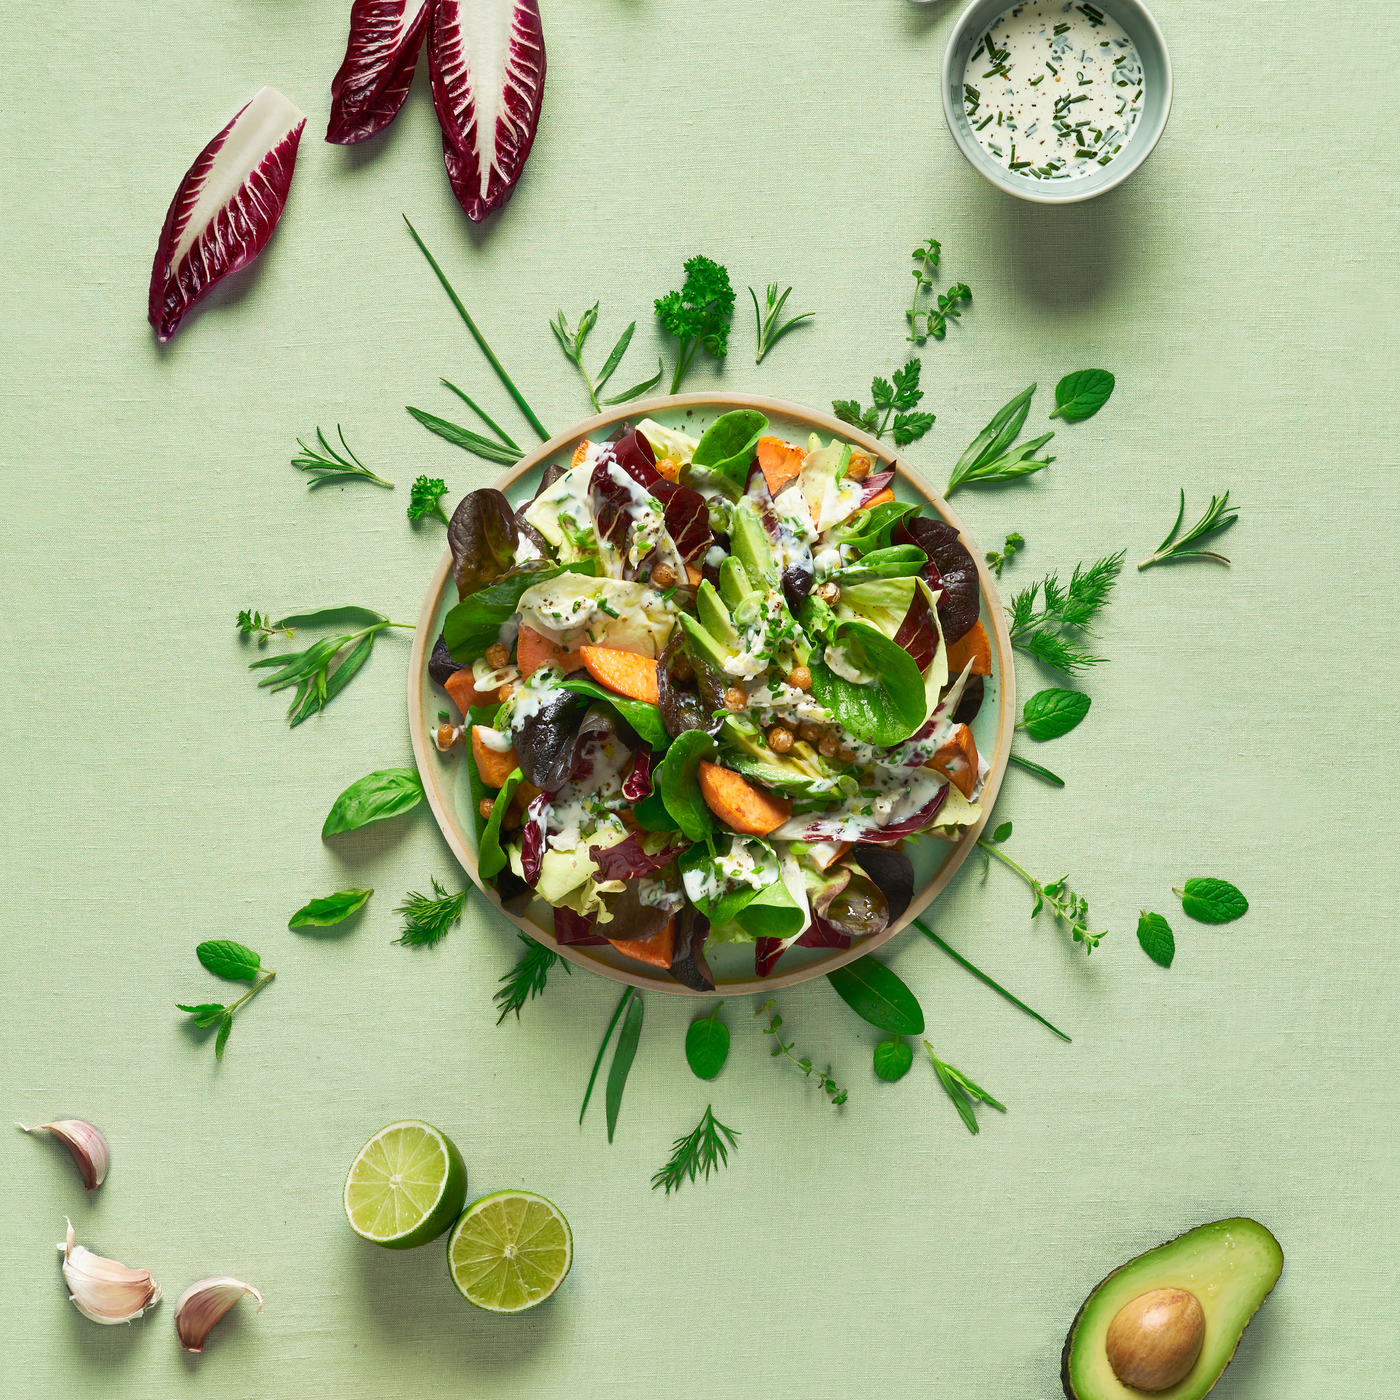 Salade garnie sauce Tartare 100% Végétal ail & fines herbes, croustillants de pois chiche et patate douce (format carré)